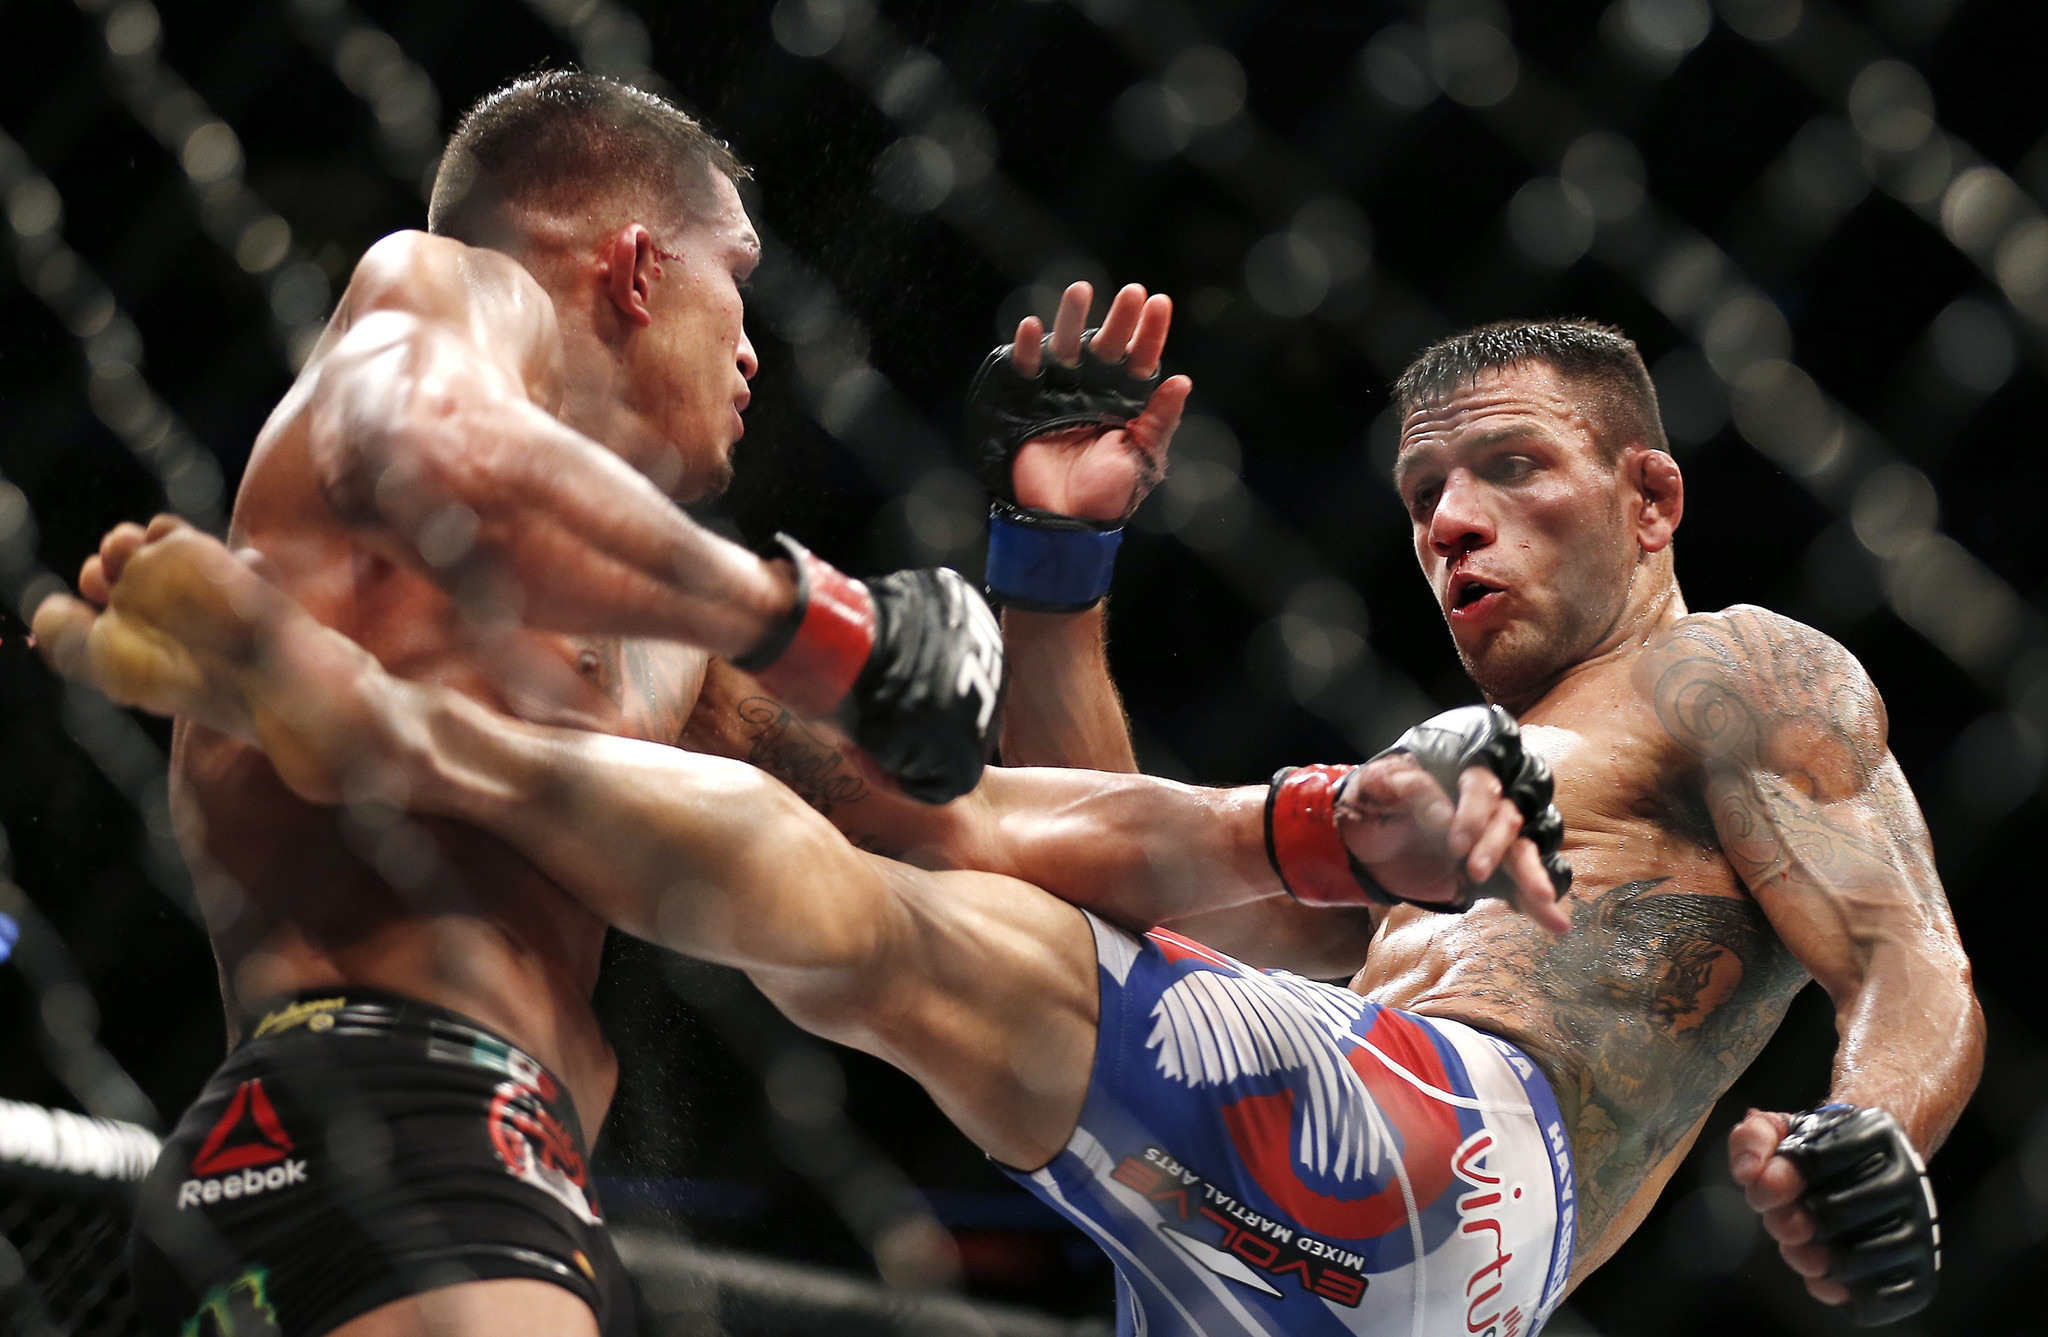 Rafael Dos Anjos to defend UFC lightweight belt vs. Eddie Alvarez - LA Times2048 x 1337